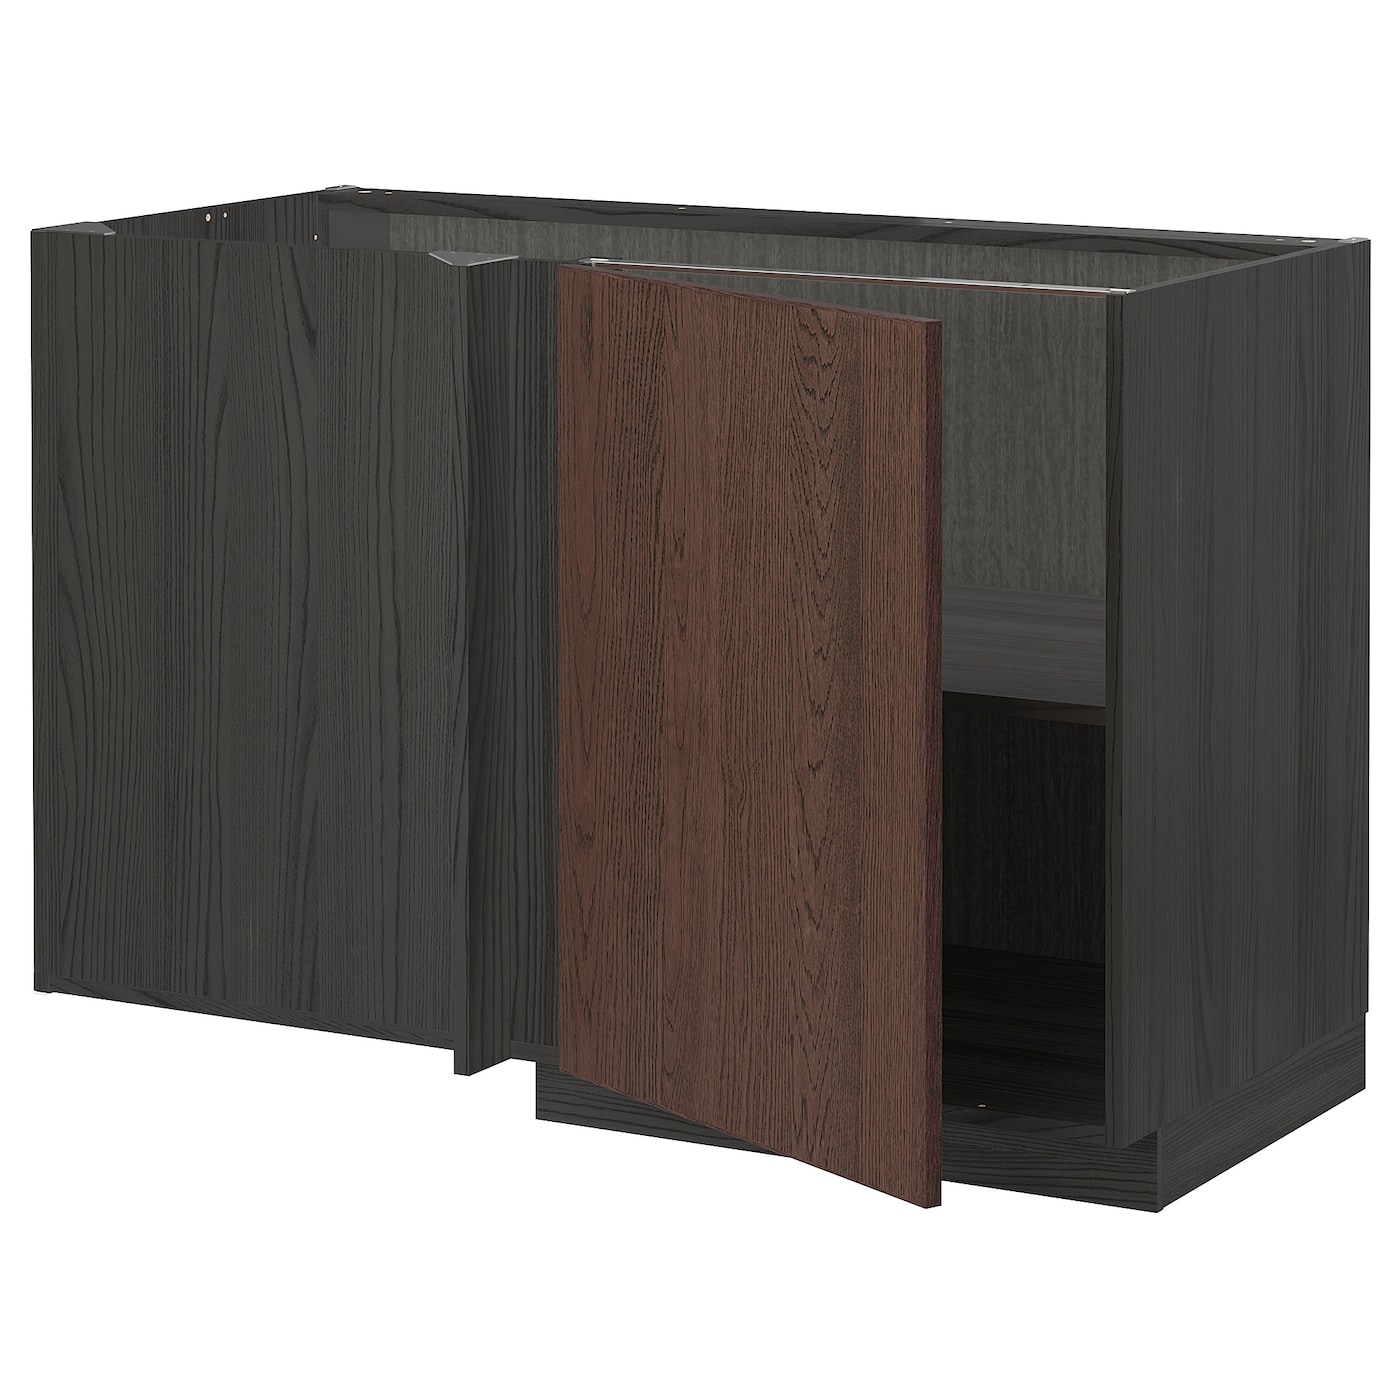 Напольный шкаф - IKEA METOD, 88x67,5x127,5см, черный/коричневый, МЕТОД ИКЕА